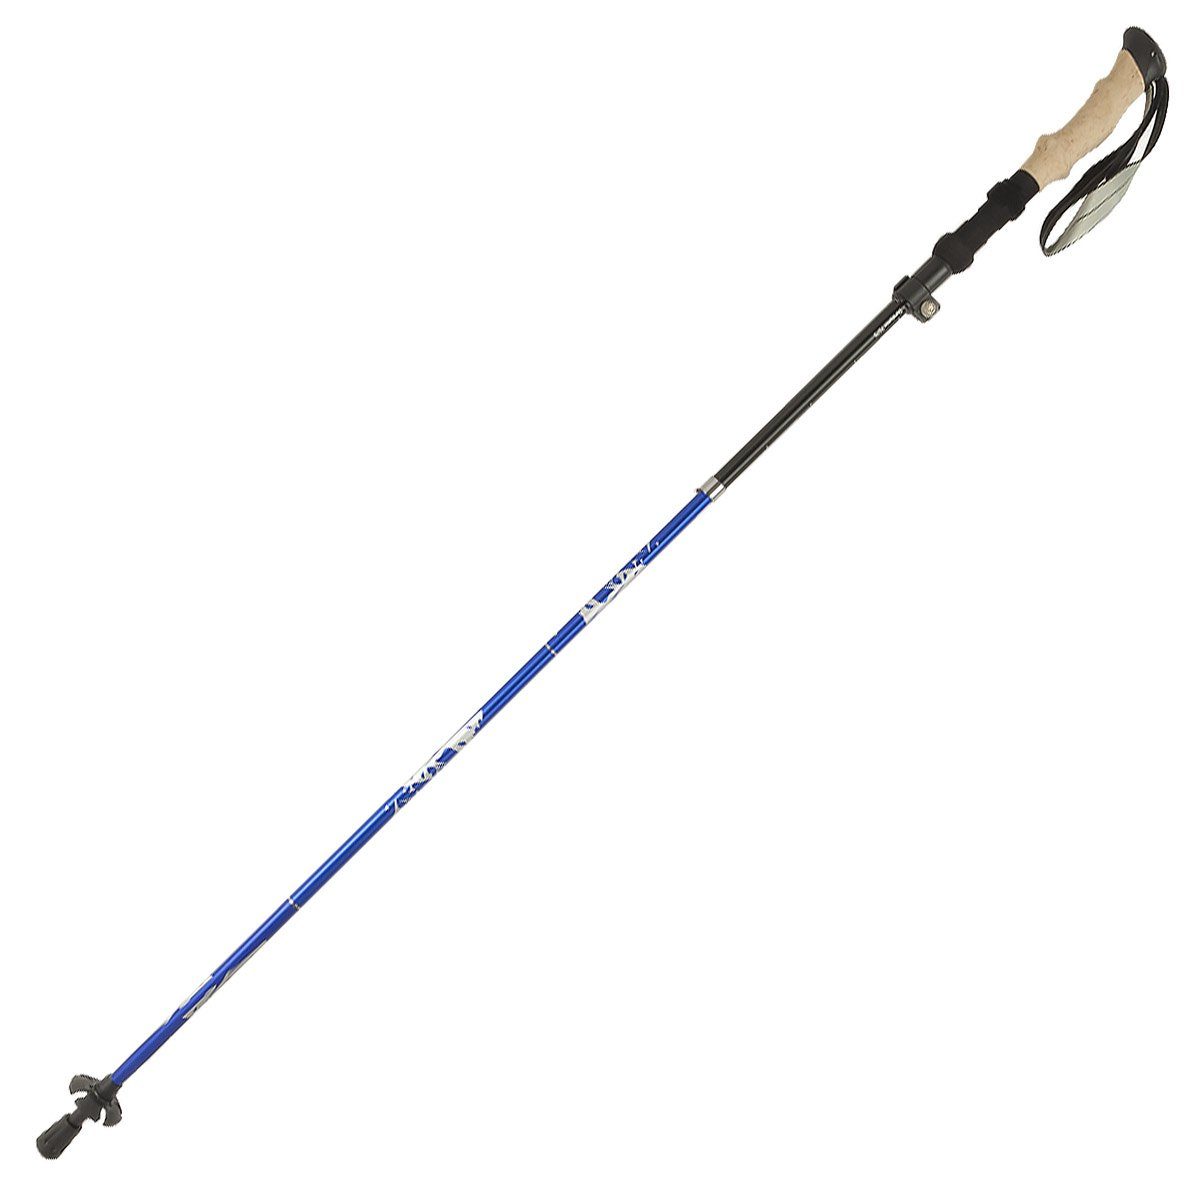 MidGard Nordic-Walking-Stöcke 101-130cm verstellbar, Antischock, Dämpfung, Wanderstöcke mit Tasche (1 St)